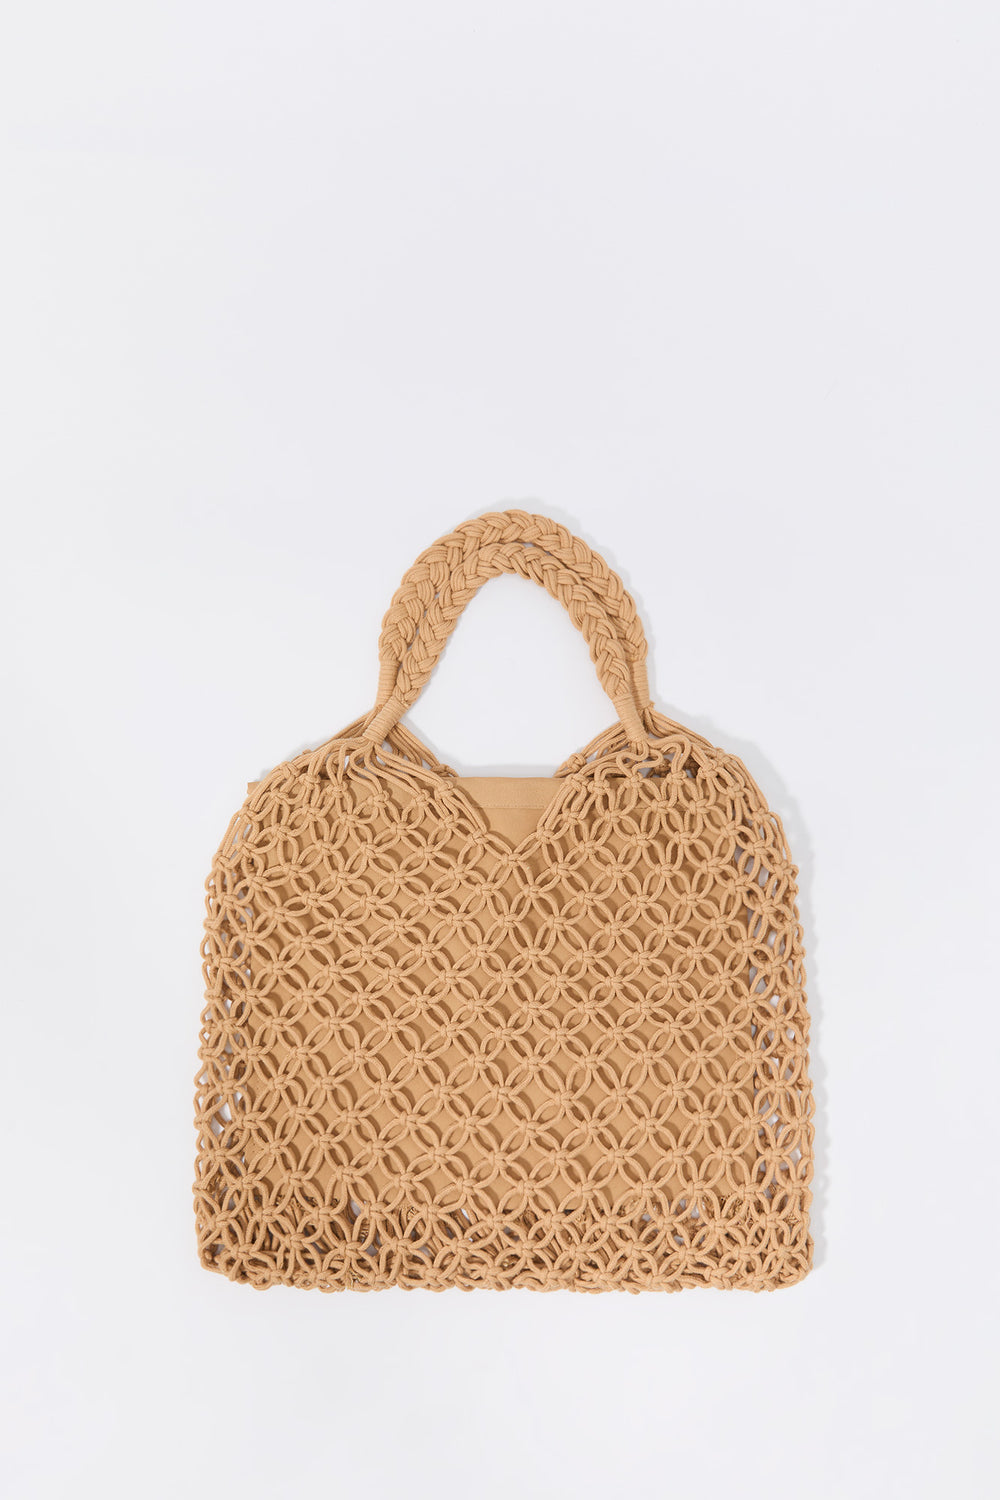 Crochet Handbag Crochet Handbag 2